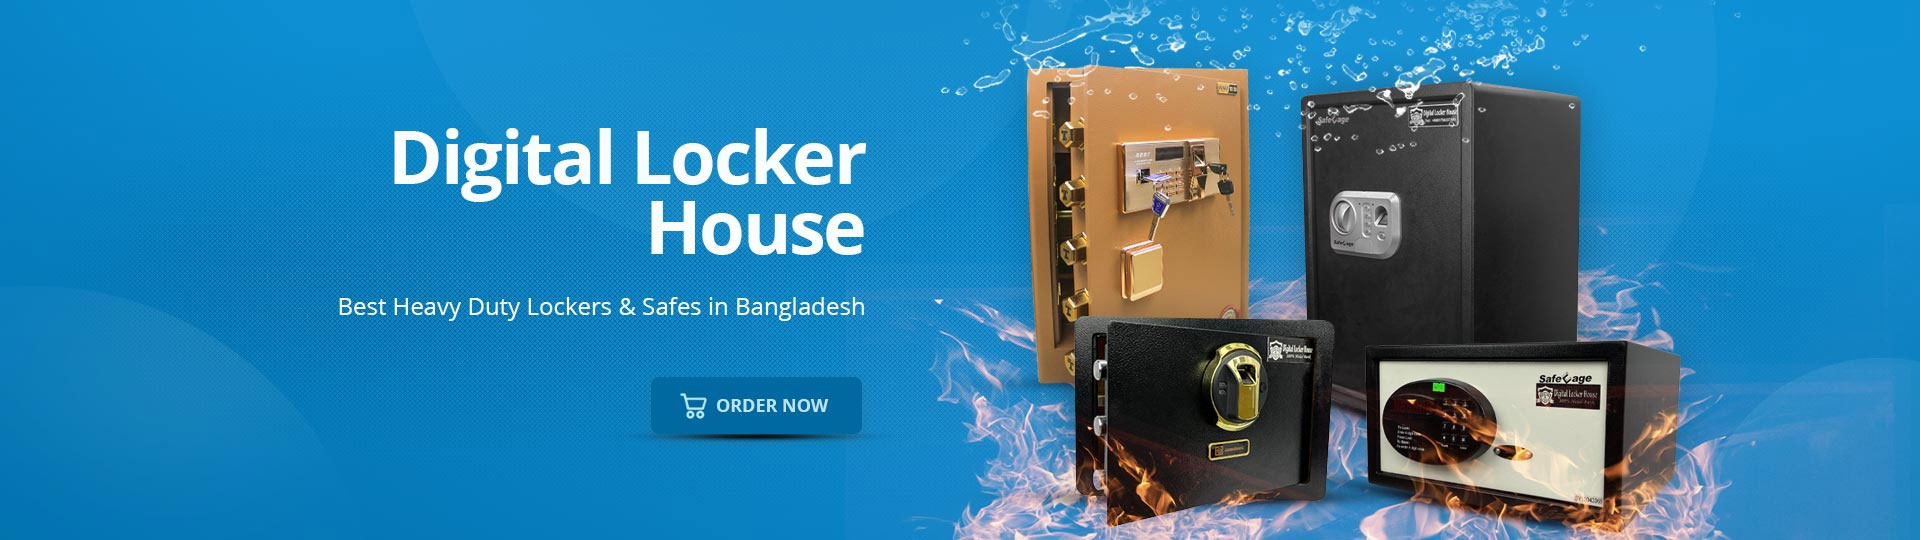 Buy Digital Locker in Uttara | Digital Locker Price in Bangladesh